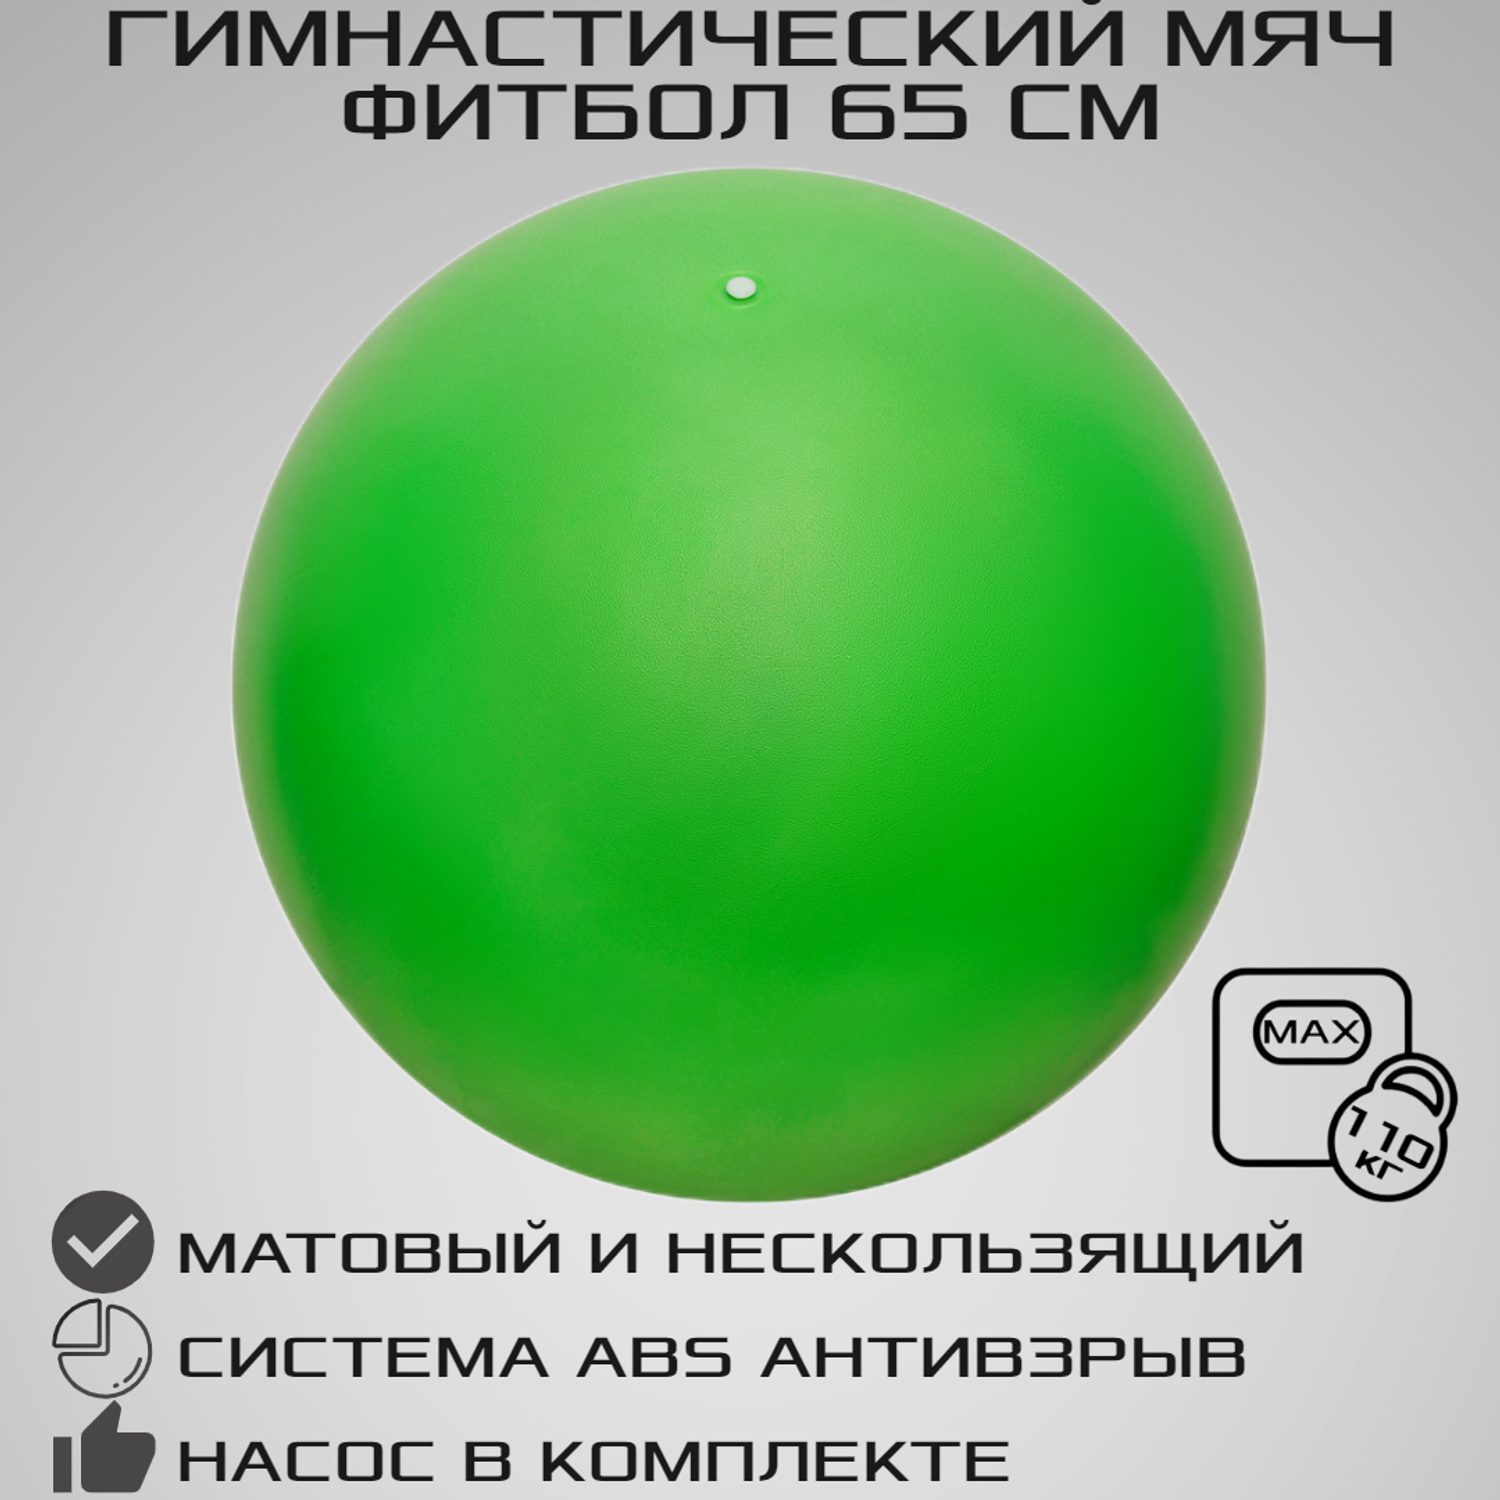 Фитбол STRONG BODY 65 см ABS антивзрыв зеленый для фитнеса Насос в комплекте - фото 1